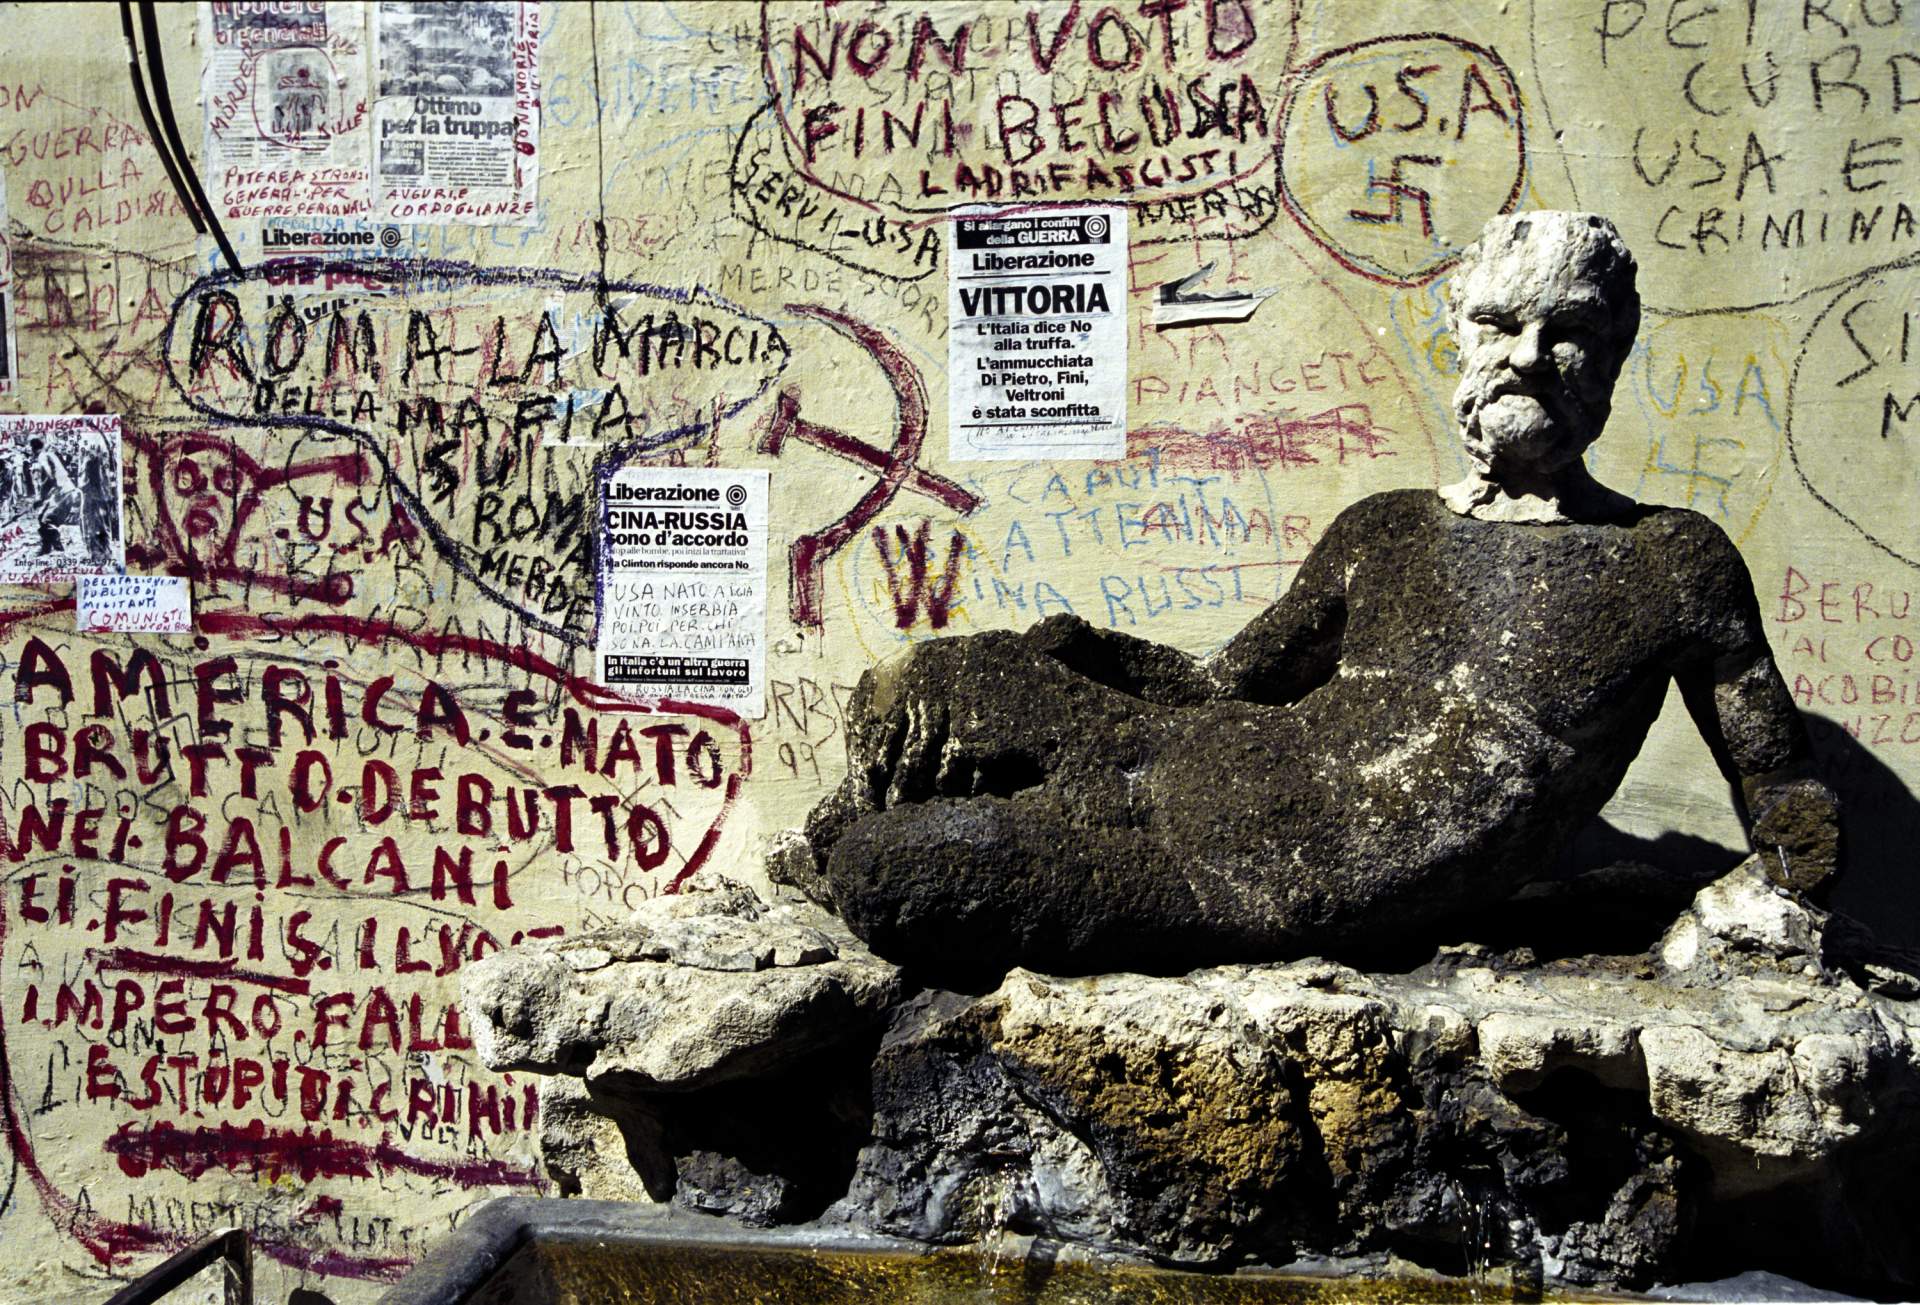 Silenus and Graffiti, Via Condotti, Rome